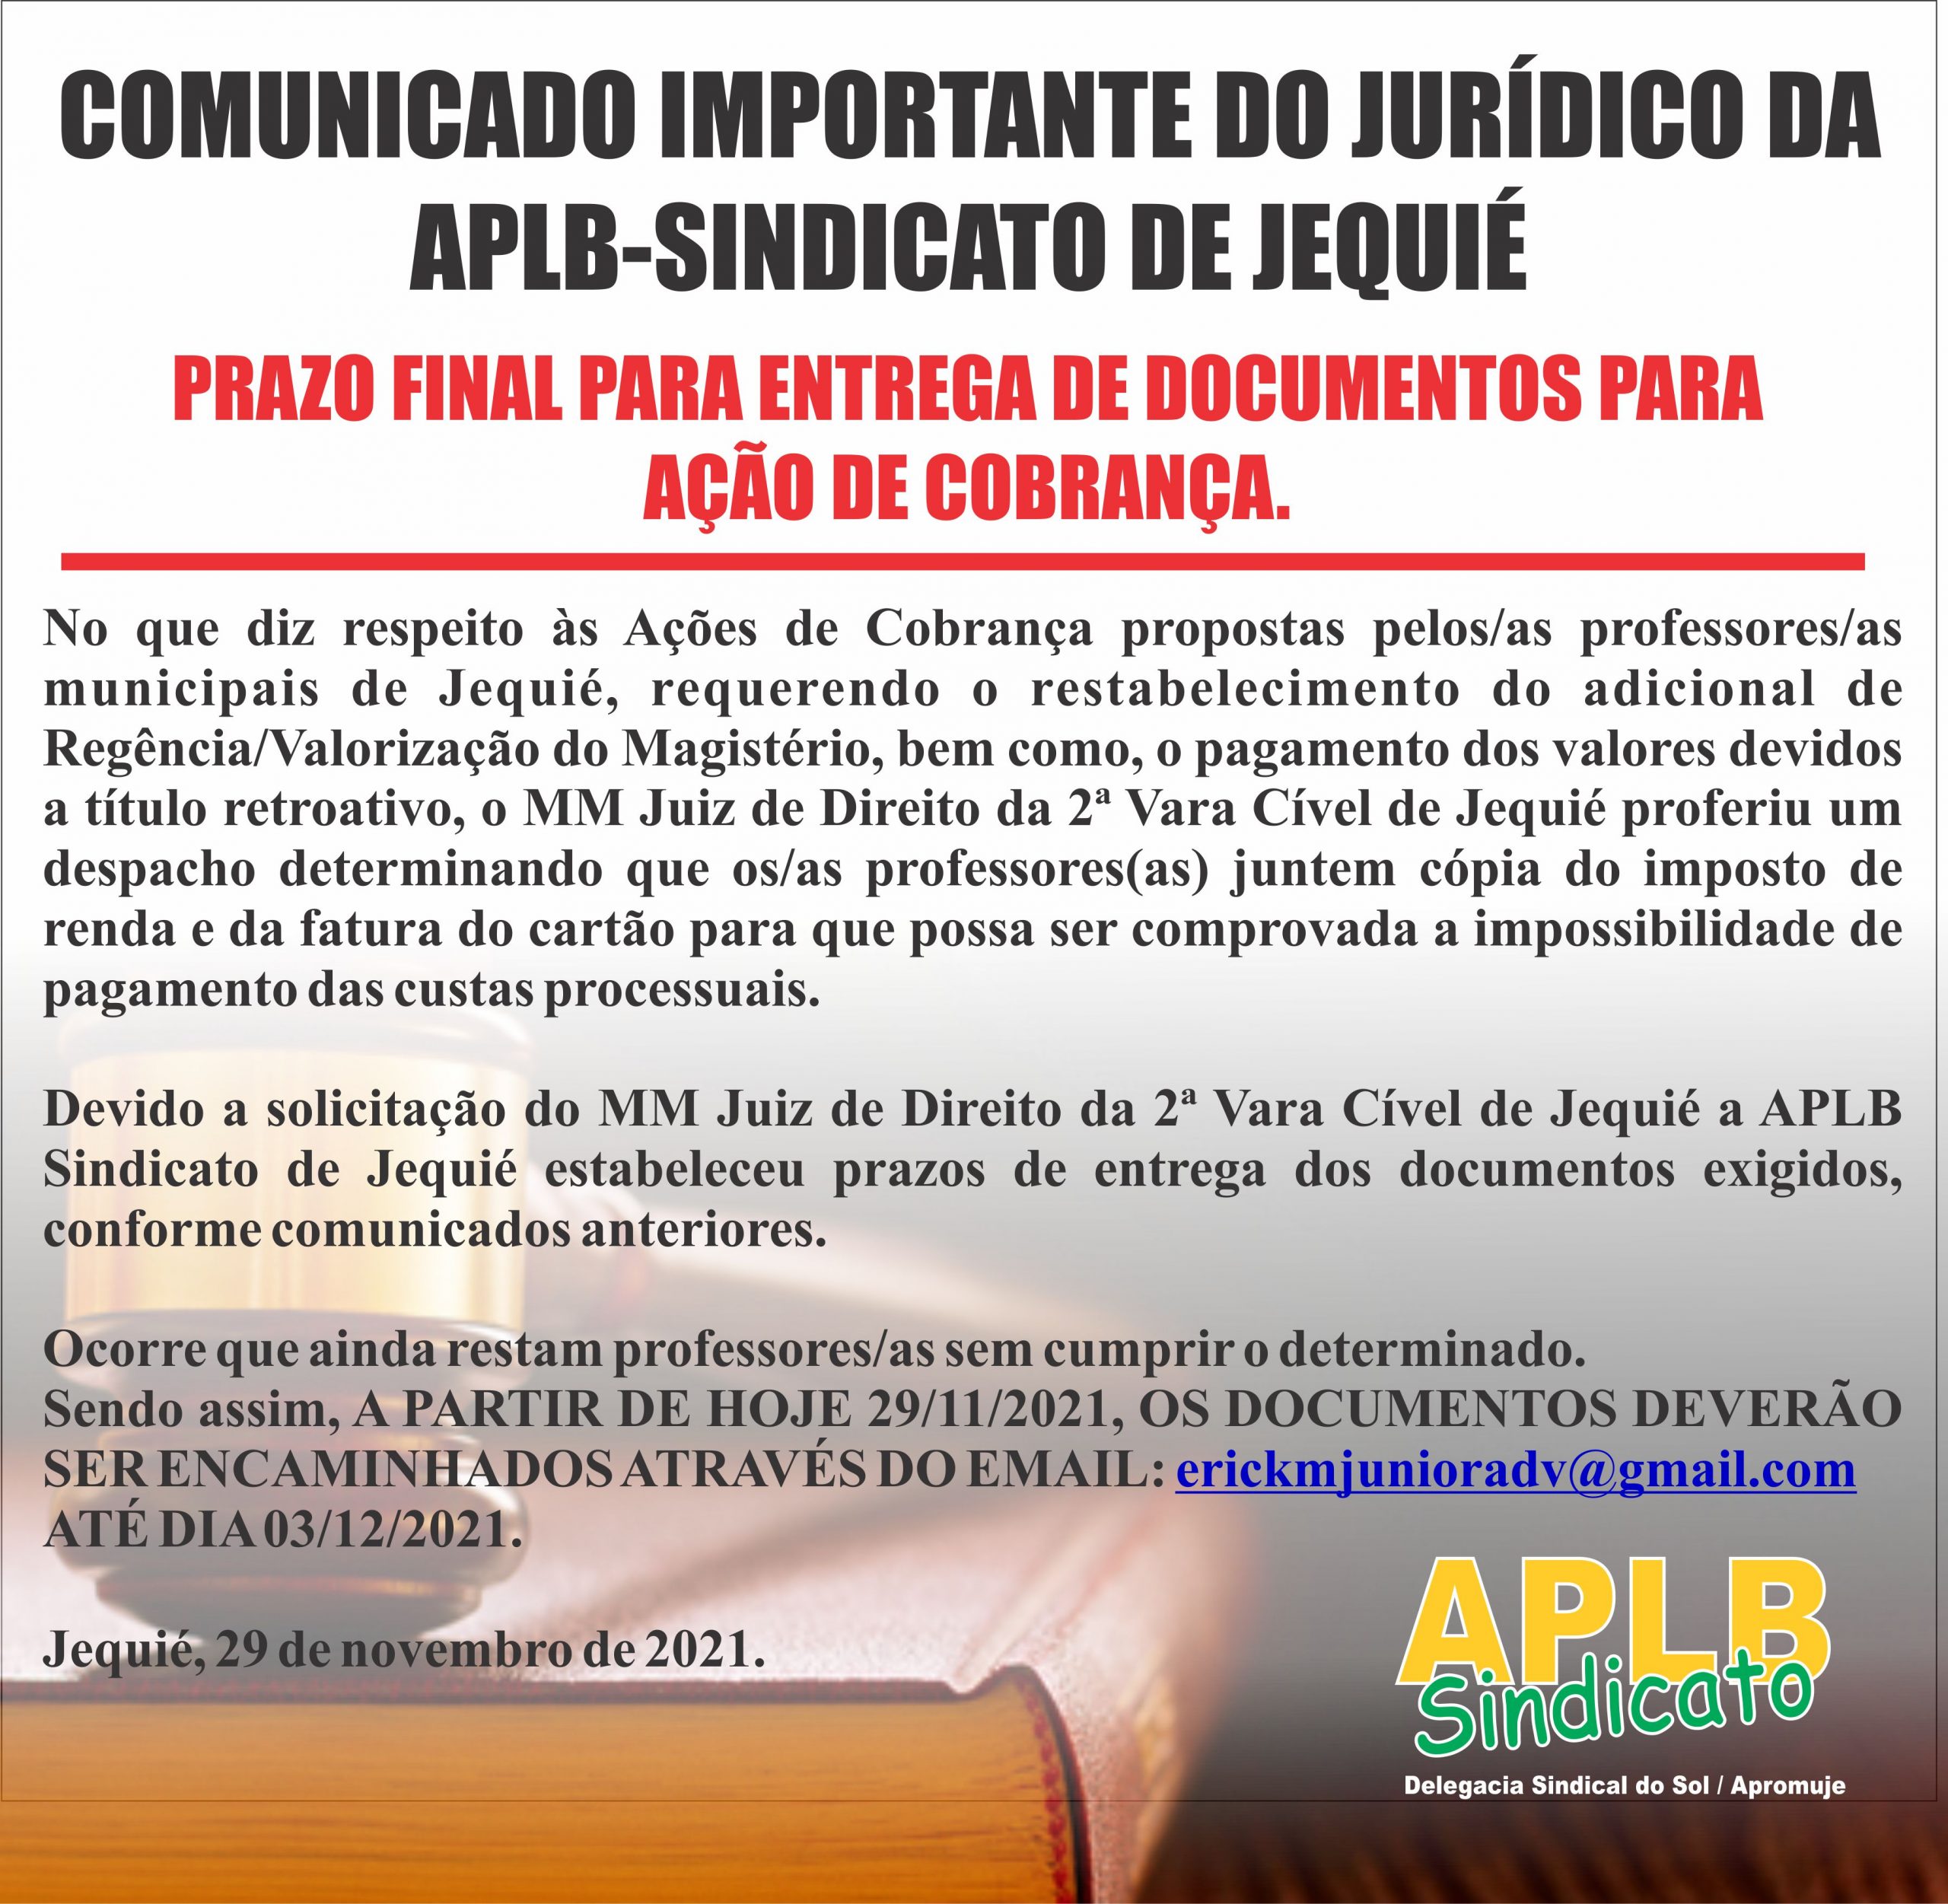 PRAZO FINAL PARA ENTREGA DE DOCUMENTOS PARA AÇÃO DE COBRANÇA/ JURÍDICO APLB